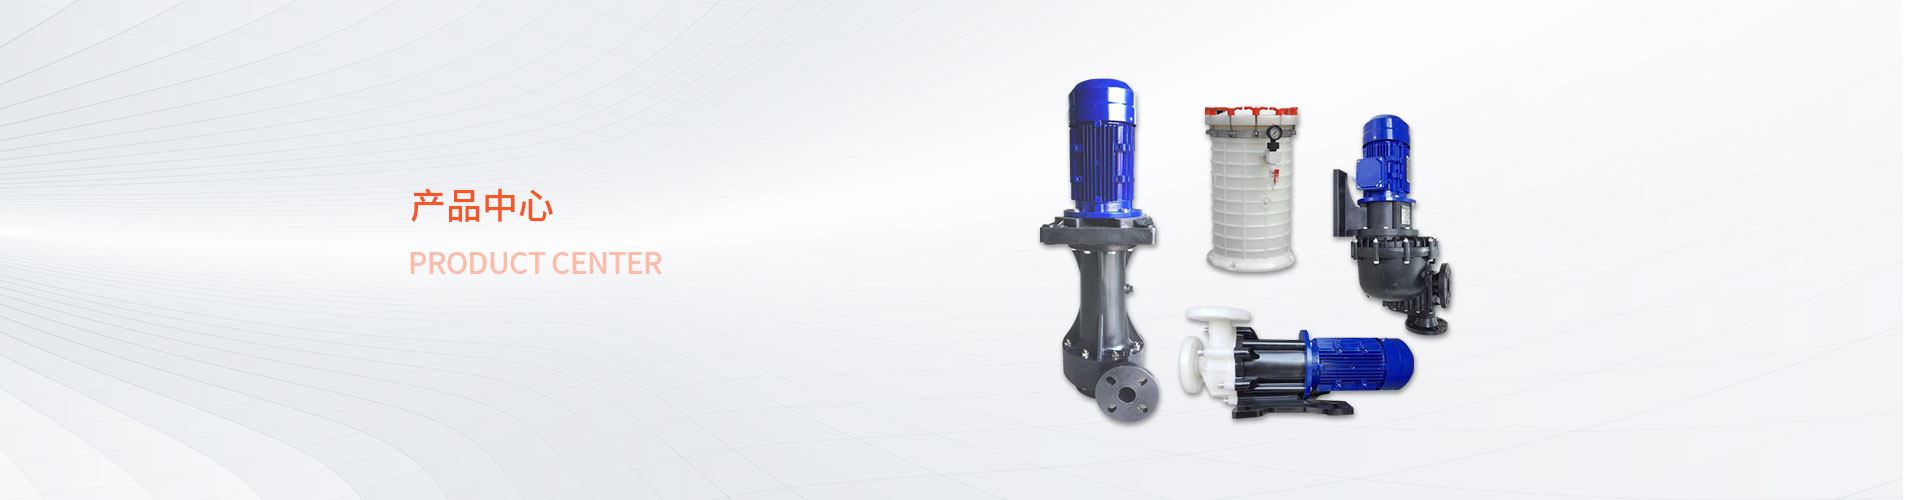 化工可空转立式泵-深圳市日泰工业设备有限公司